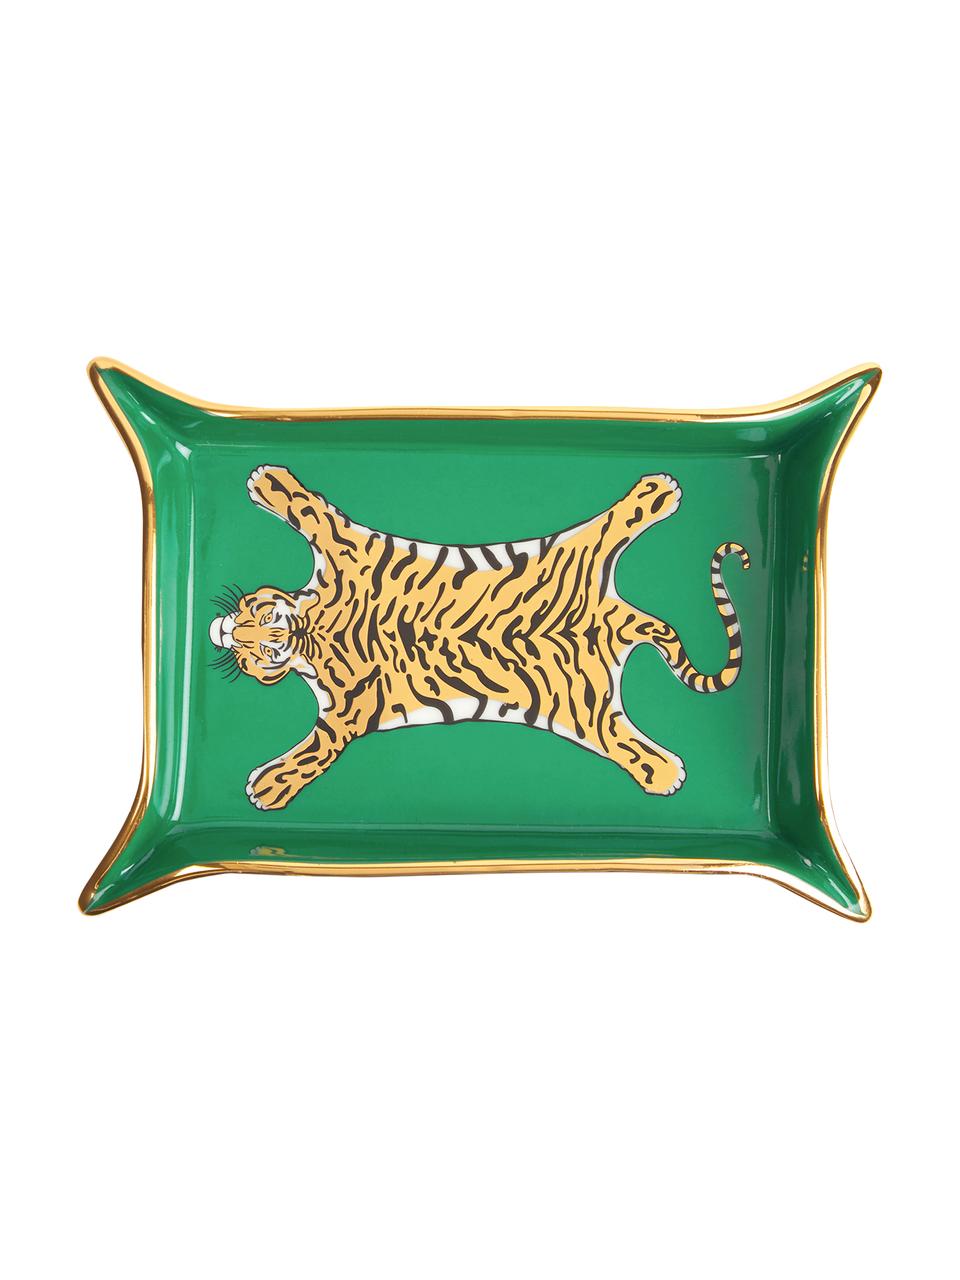 Designer-Schale Tiger, vergoldet, Porzellan, vergoldete Akzente, Innen: Grün, Gold, Beigetöne Aussen: Weiss, B 18 x T 13 cm